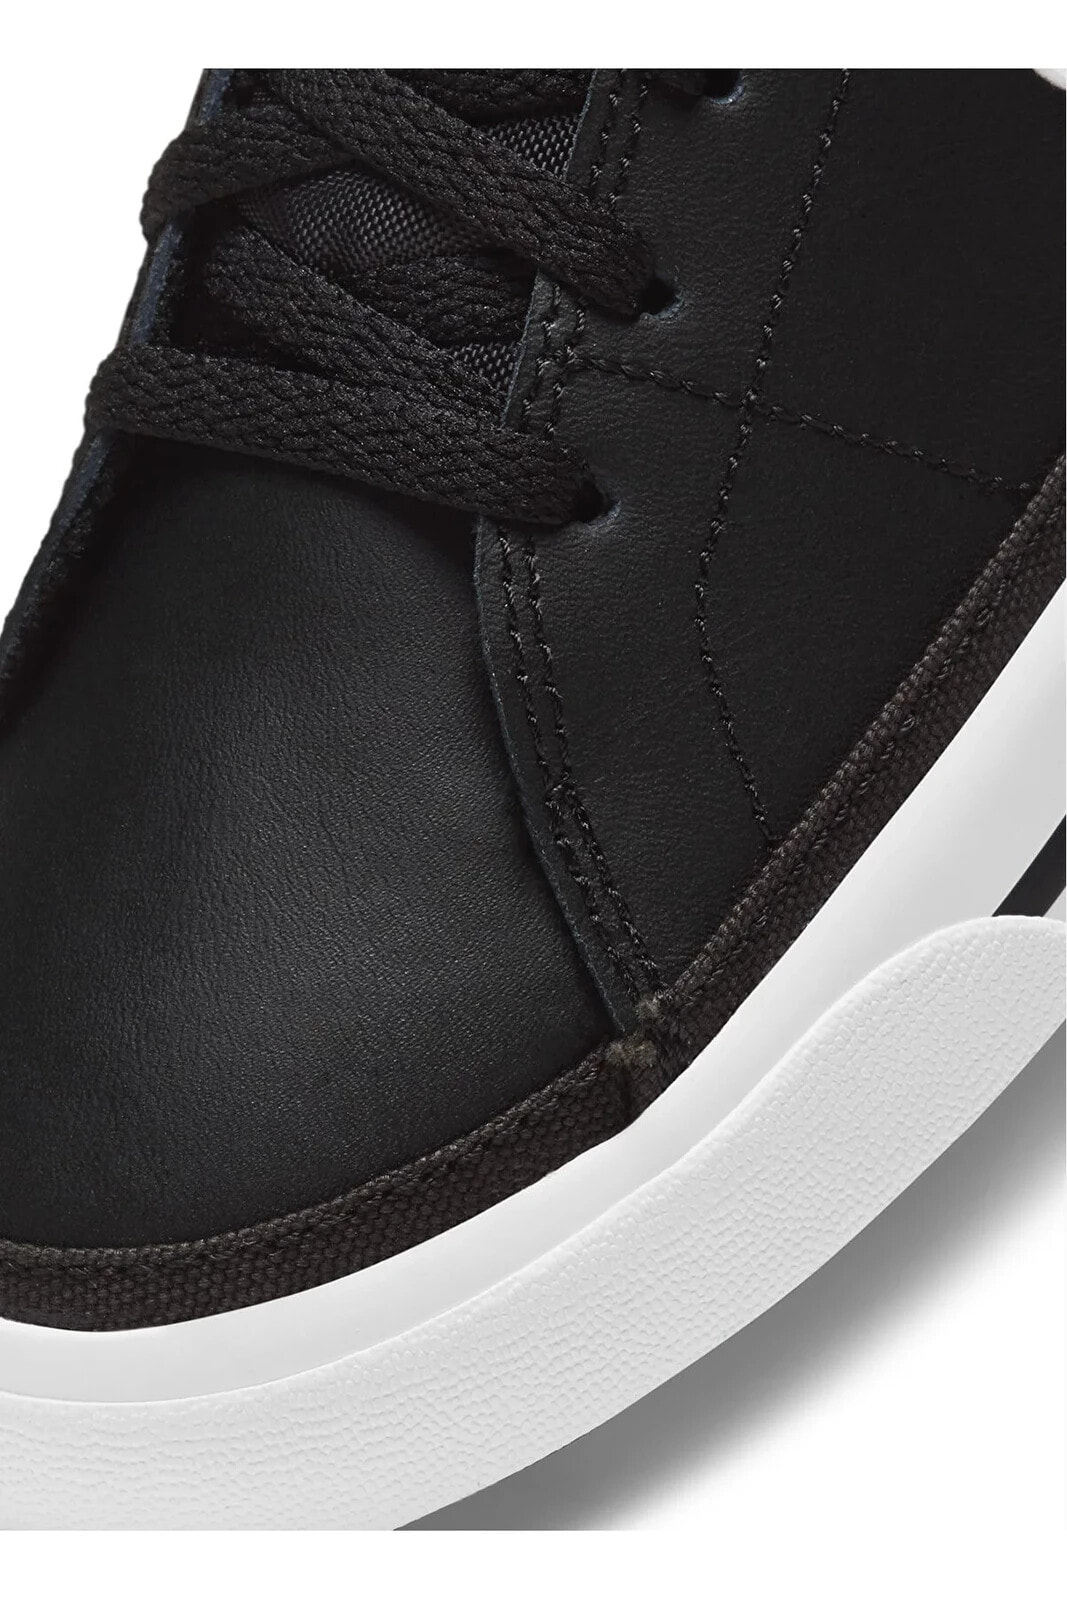 Çocuk Siyah - Beyaz Yürüyüş Ayakkabısı DA5380-002 NIKE COURT LEGACY (GS)